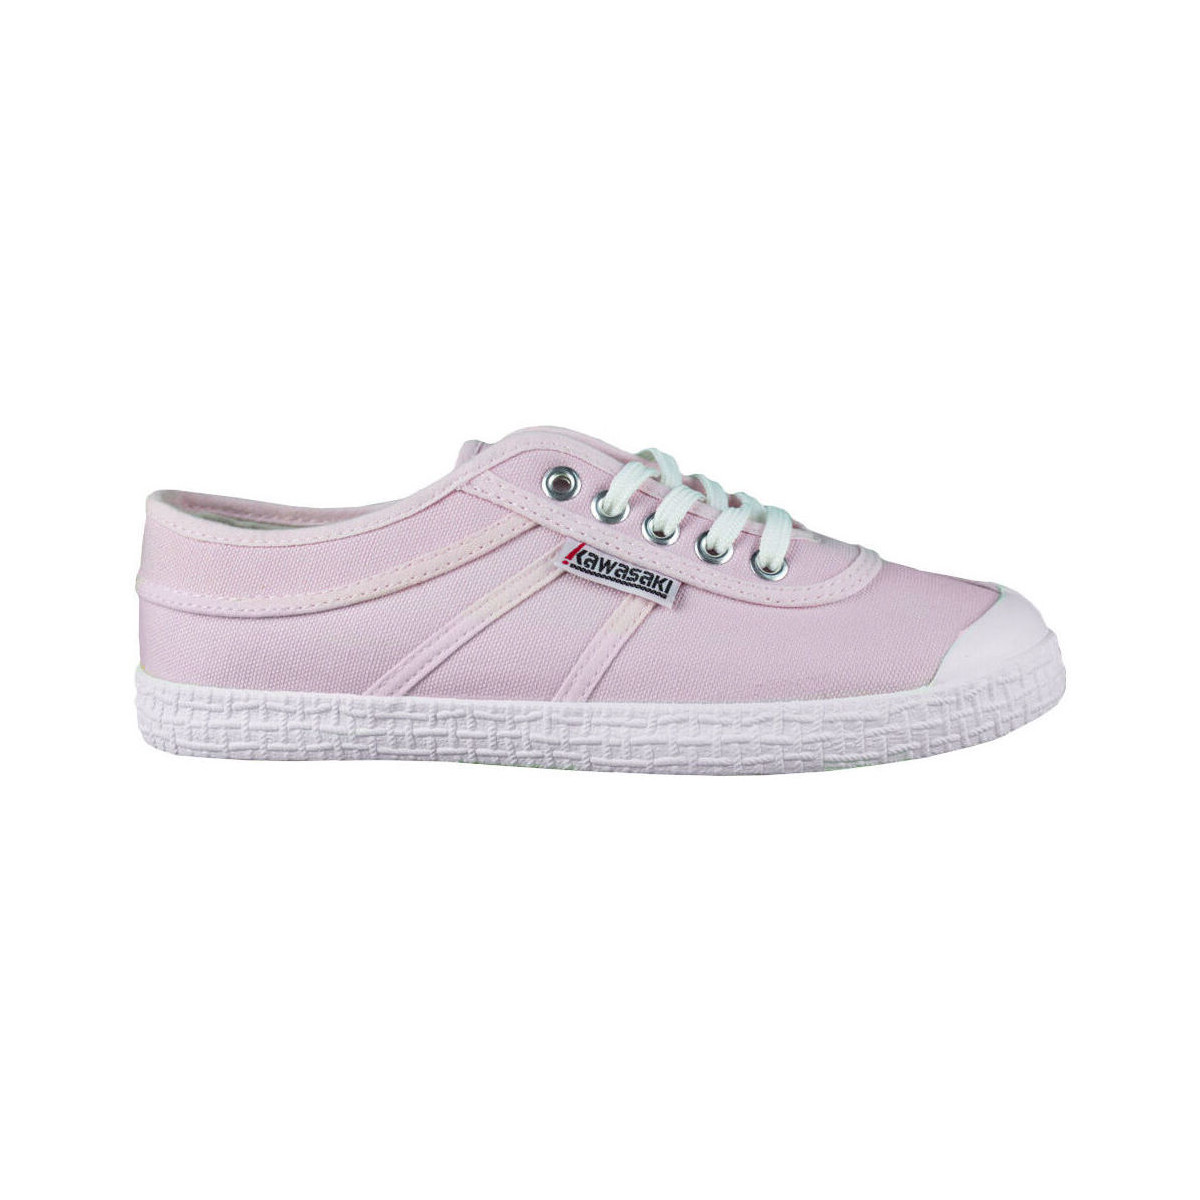 Cipők Női Divat edzőcipők Kawasaki Original Canvas Shoe K192495 4046 Candy Pink Rózsaszín